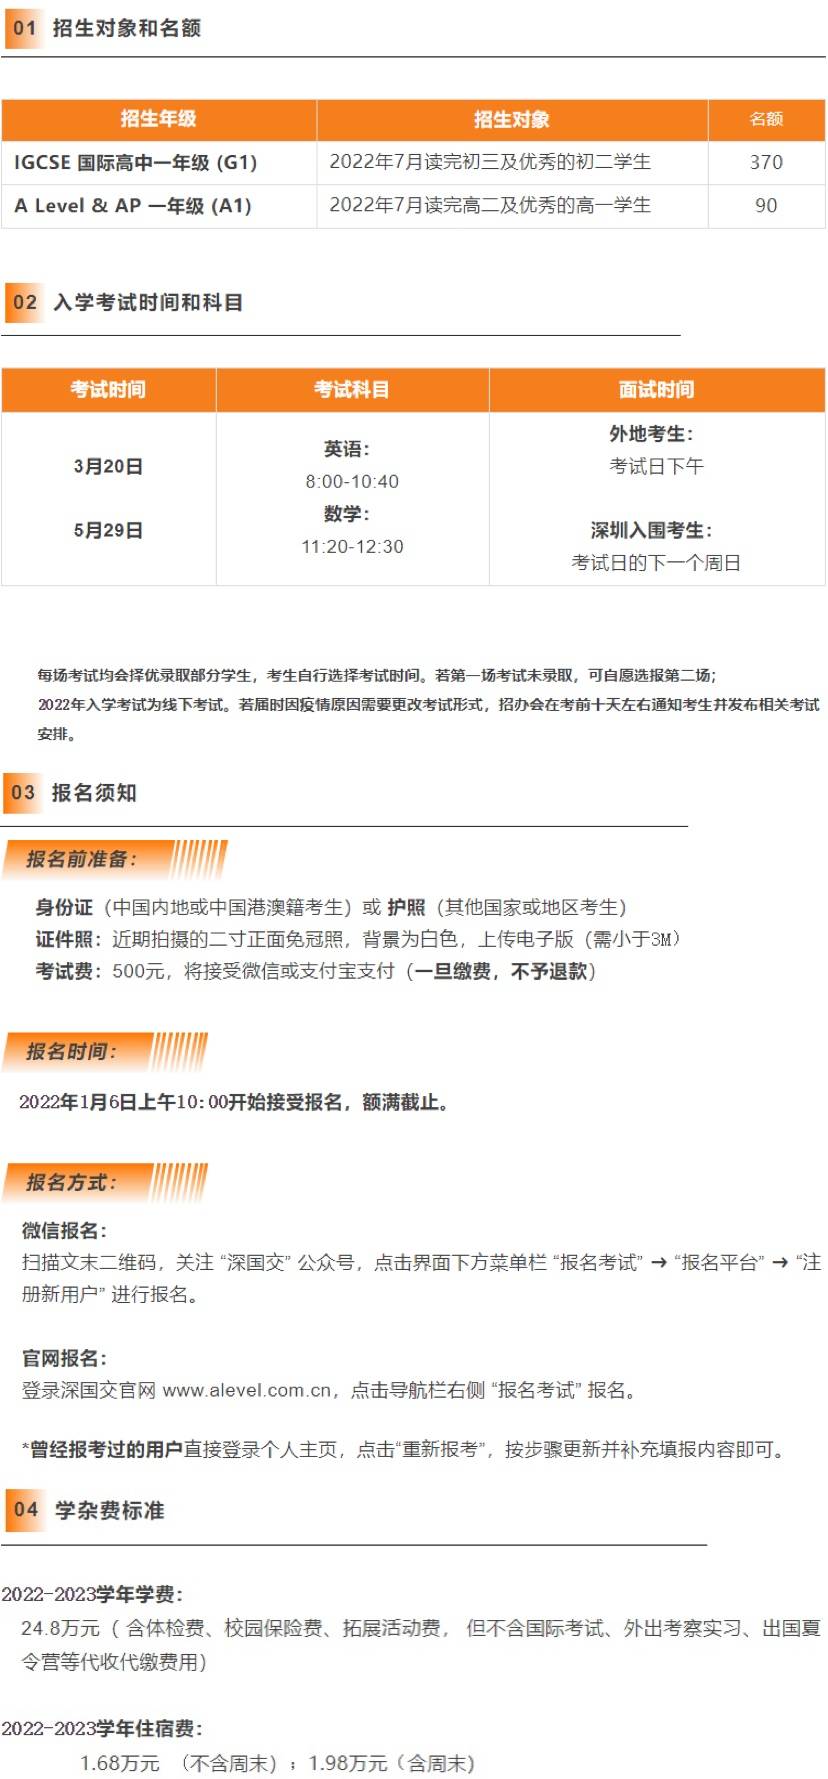 深圳国际交流学院2022-2023学年招生简章插图(1)